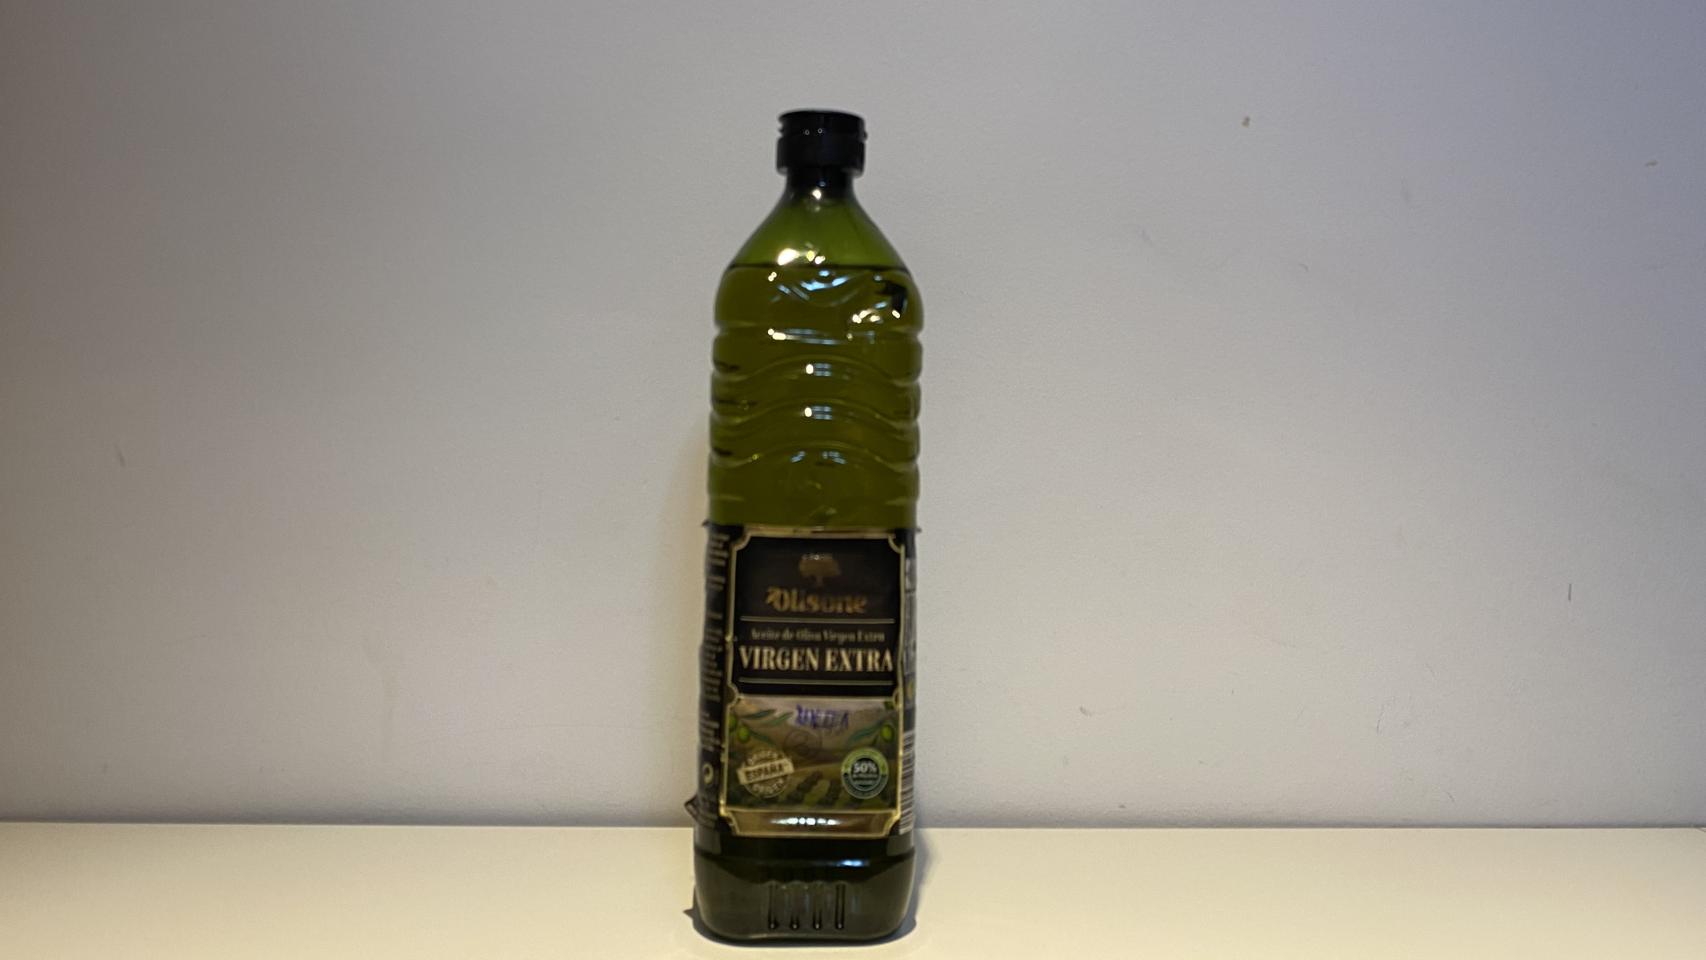 El aceite de oliva virgen extra de Olisone, la marca blanca de Lidl.